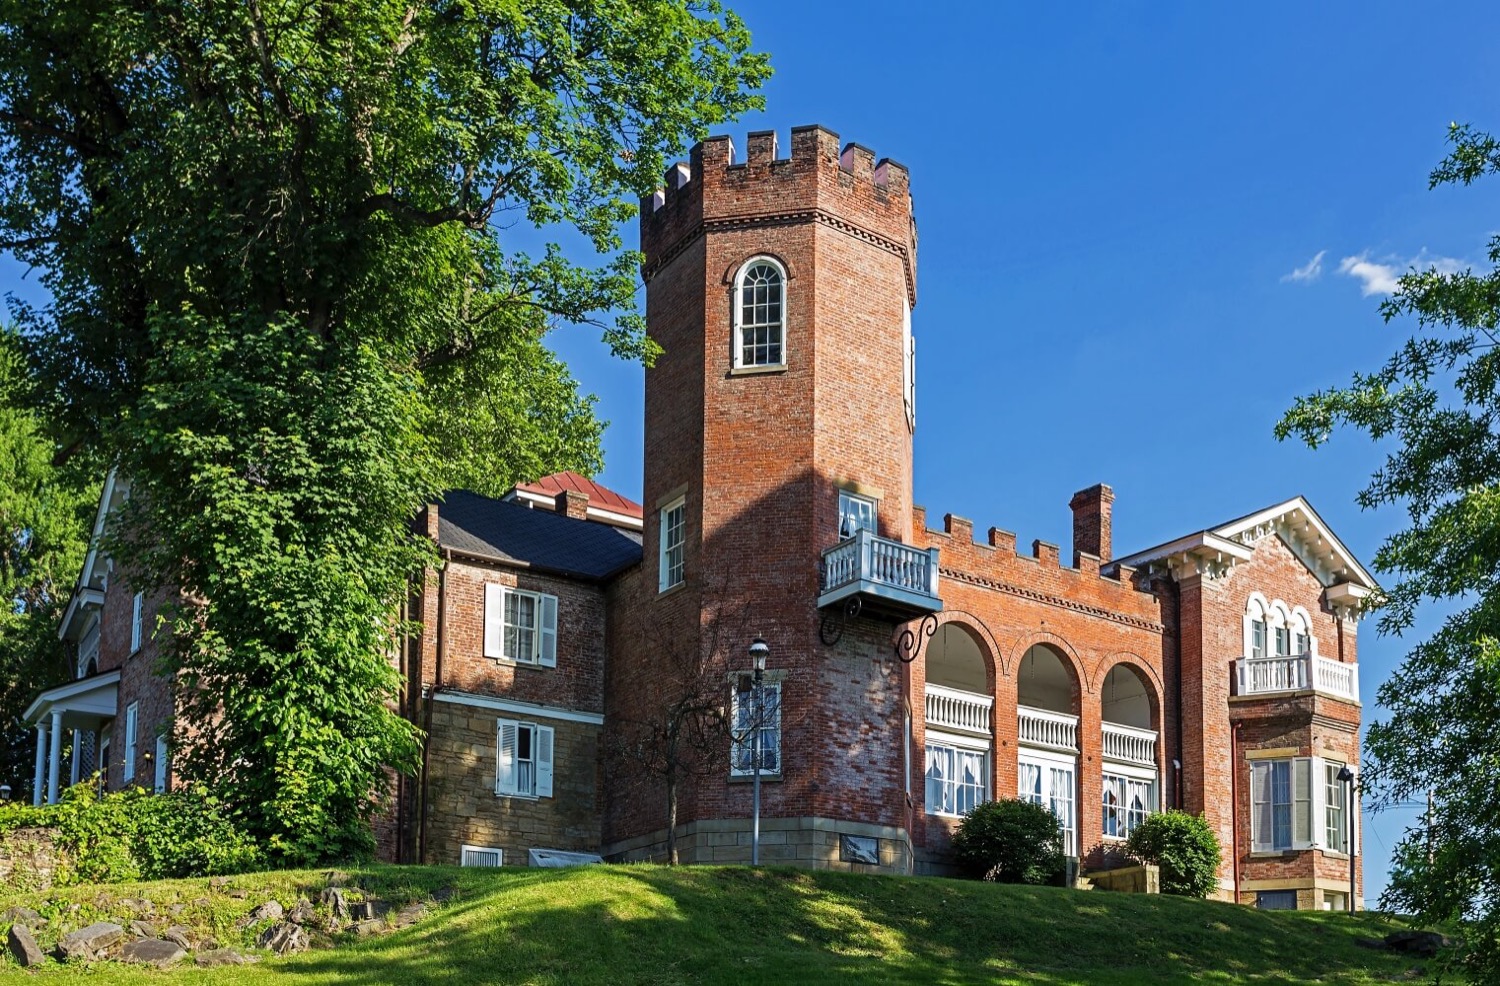 Bowman's Castle